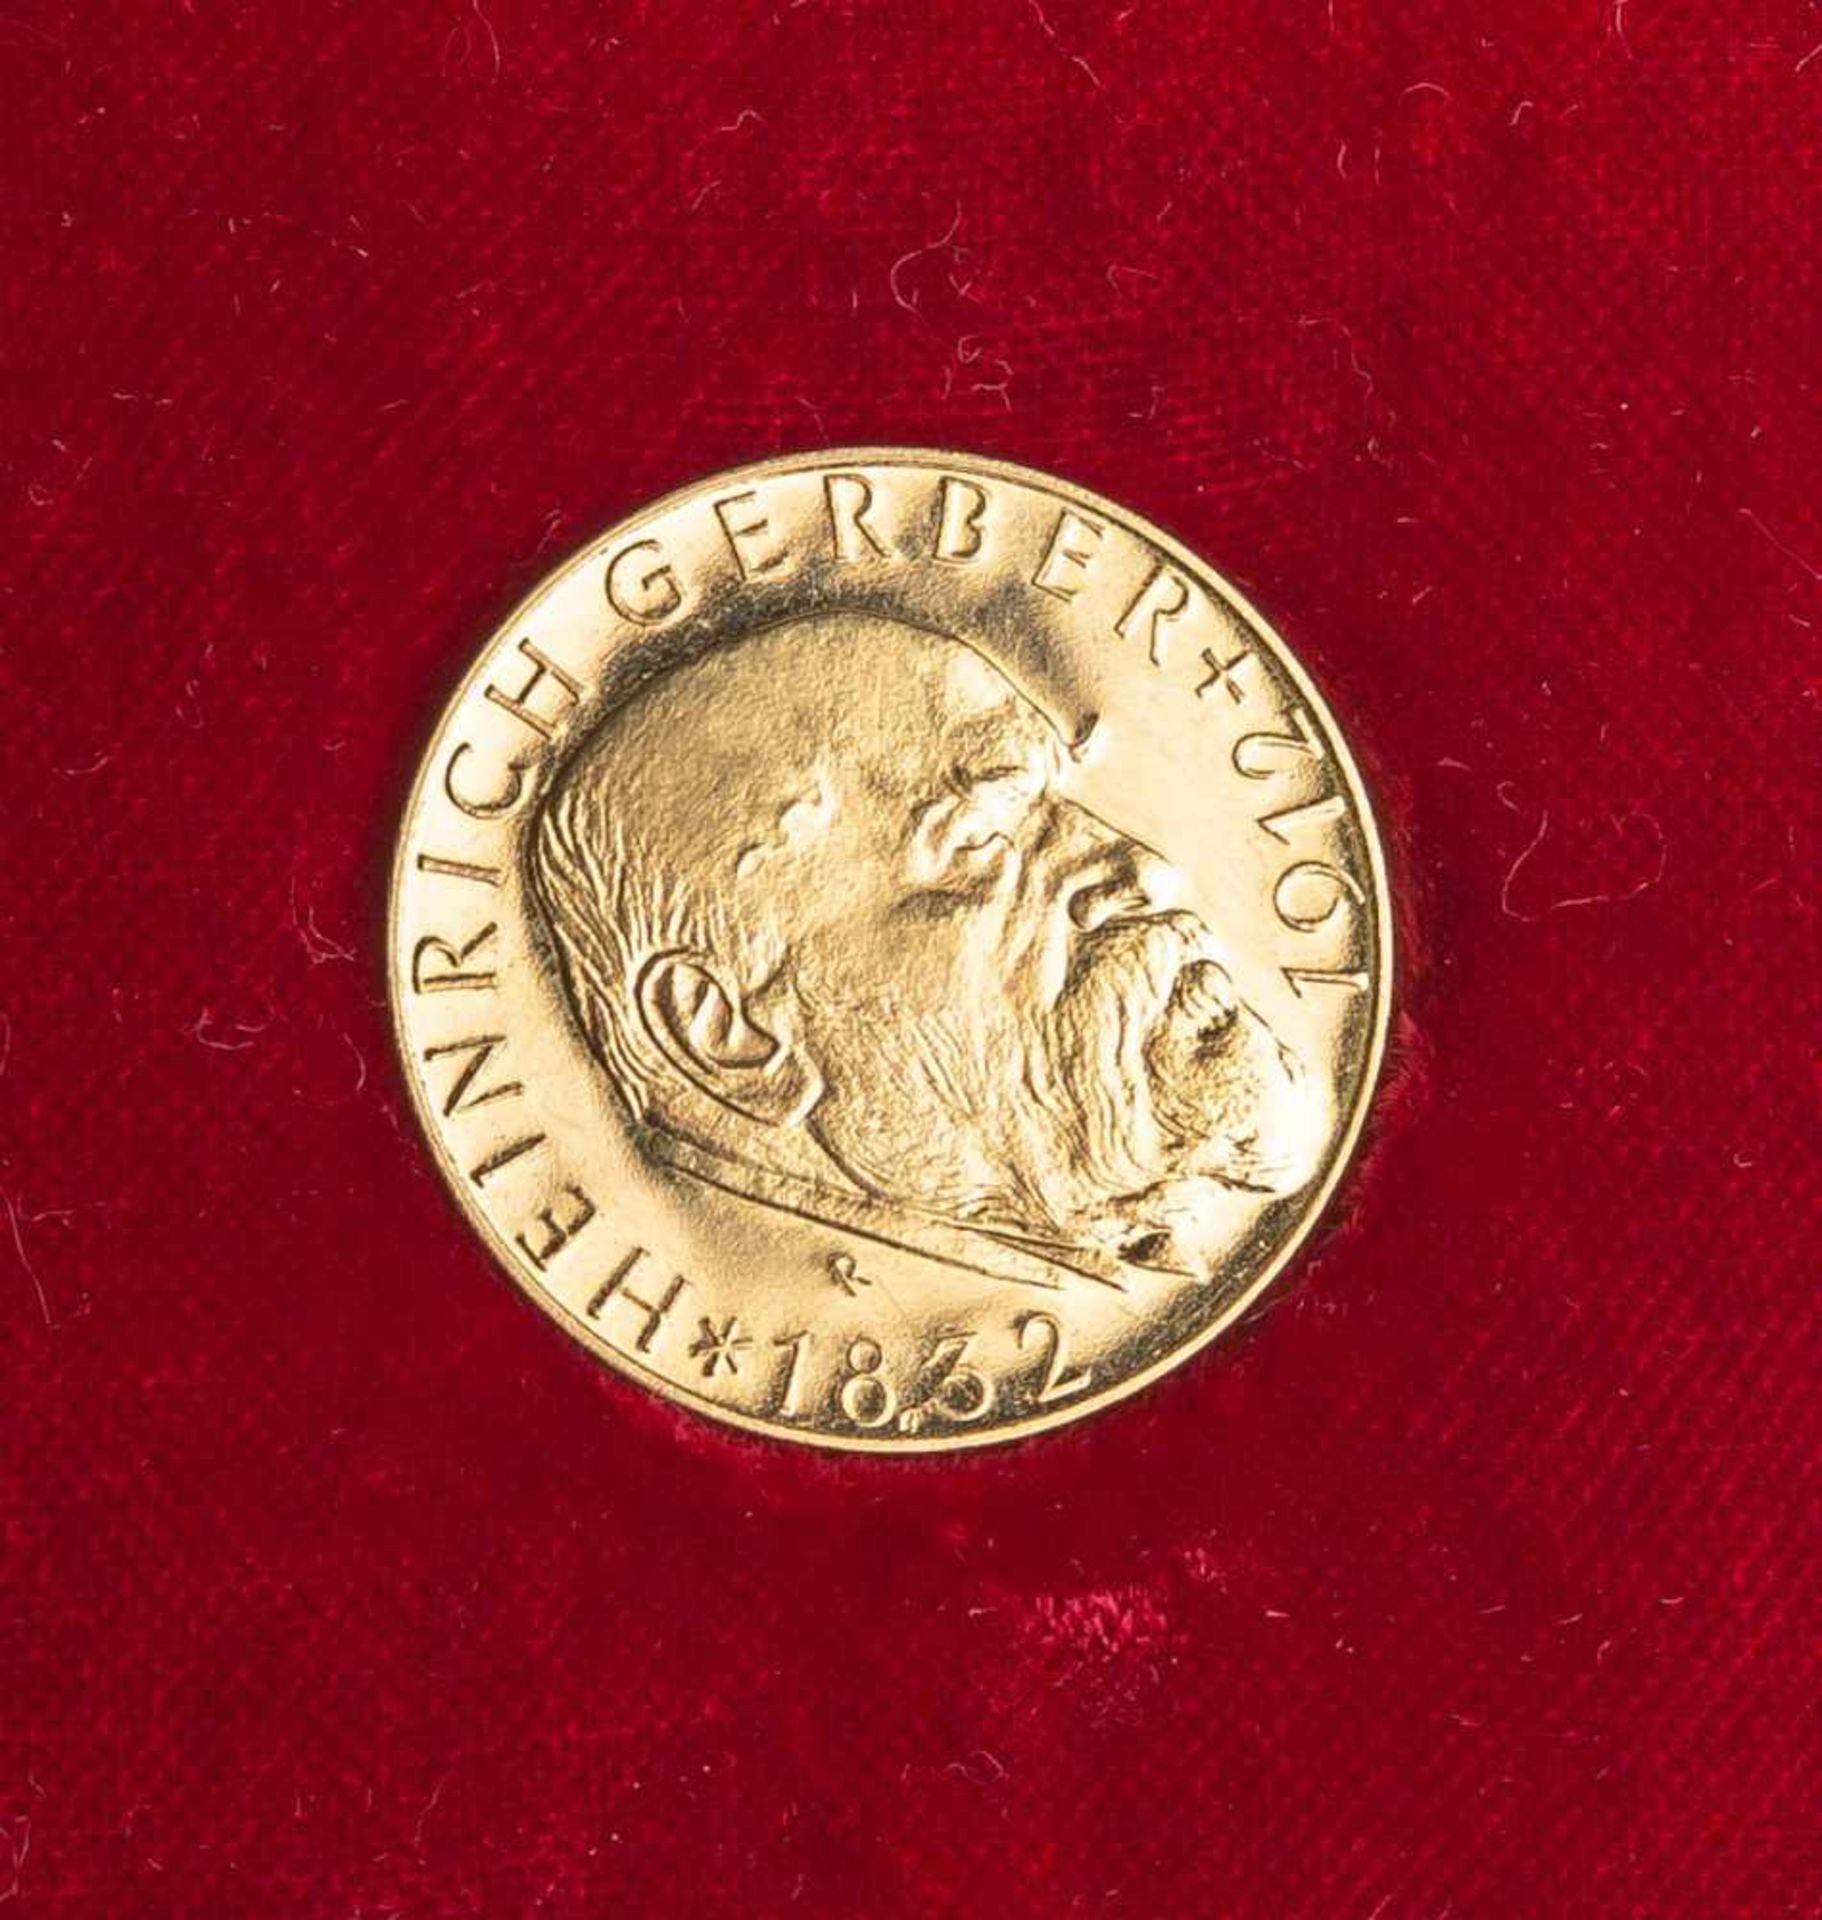 Medaille (bayr. Staatsmünze), 900 fein, Heinrich Gerber (1860-1960), Hundert Jahre Werk<